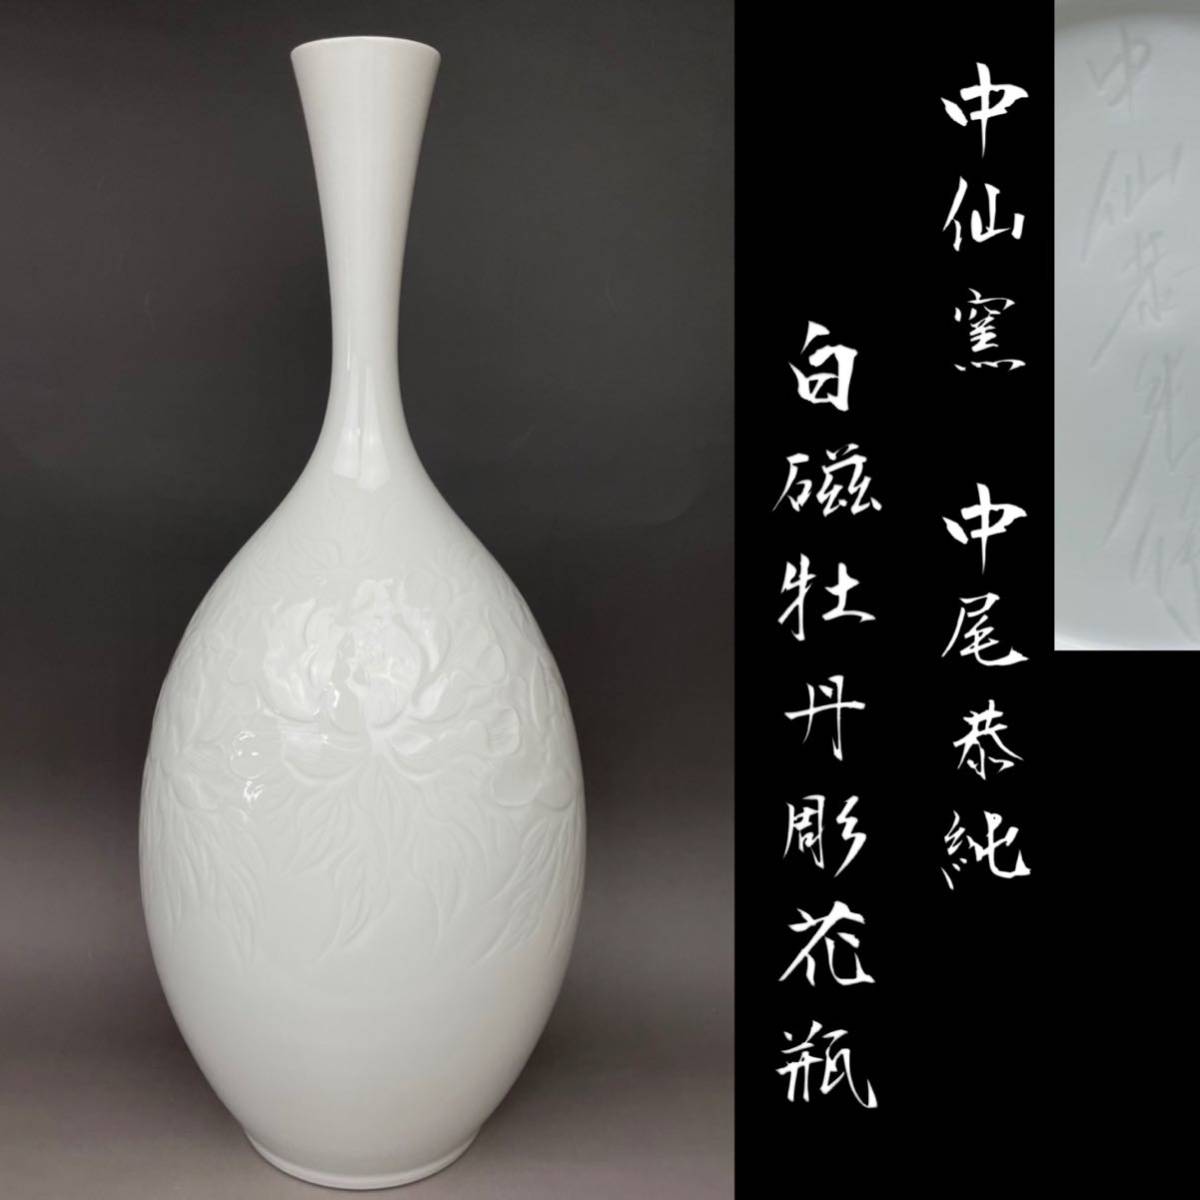 中尾恭純 白磁牡丹彫花瓶 高さ約40cm 中仙窯 日本伝統工芸会 花瓶 白磁